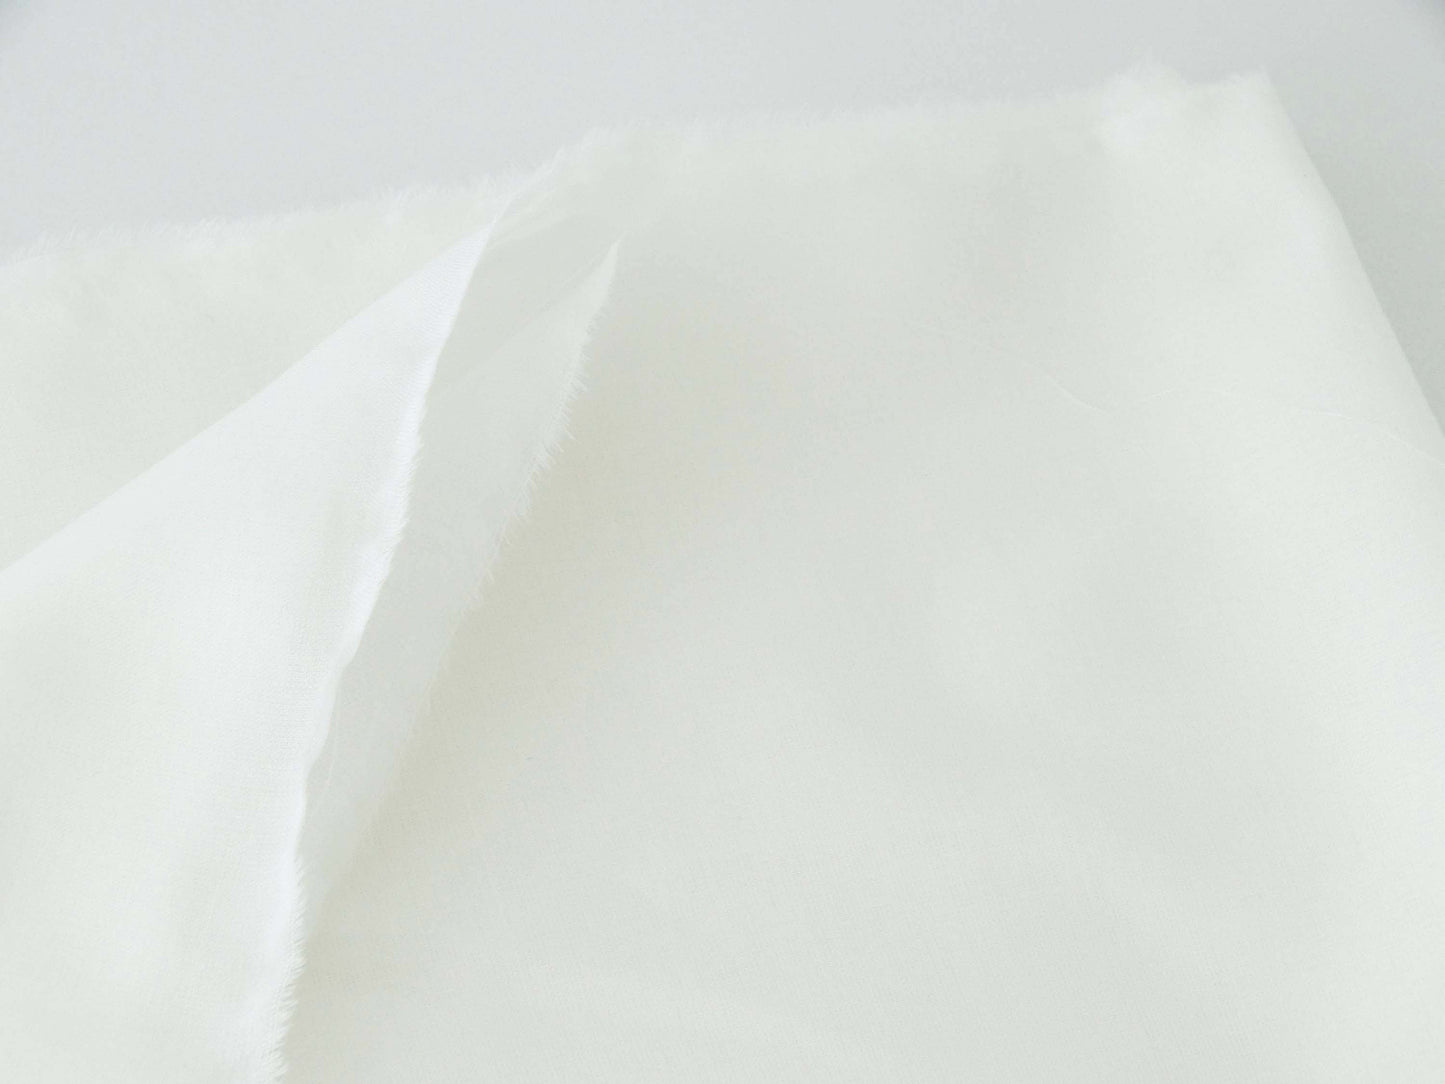 Capsule Petites Choses x Atelier 27 - Tissu voile de coton light - Blanc